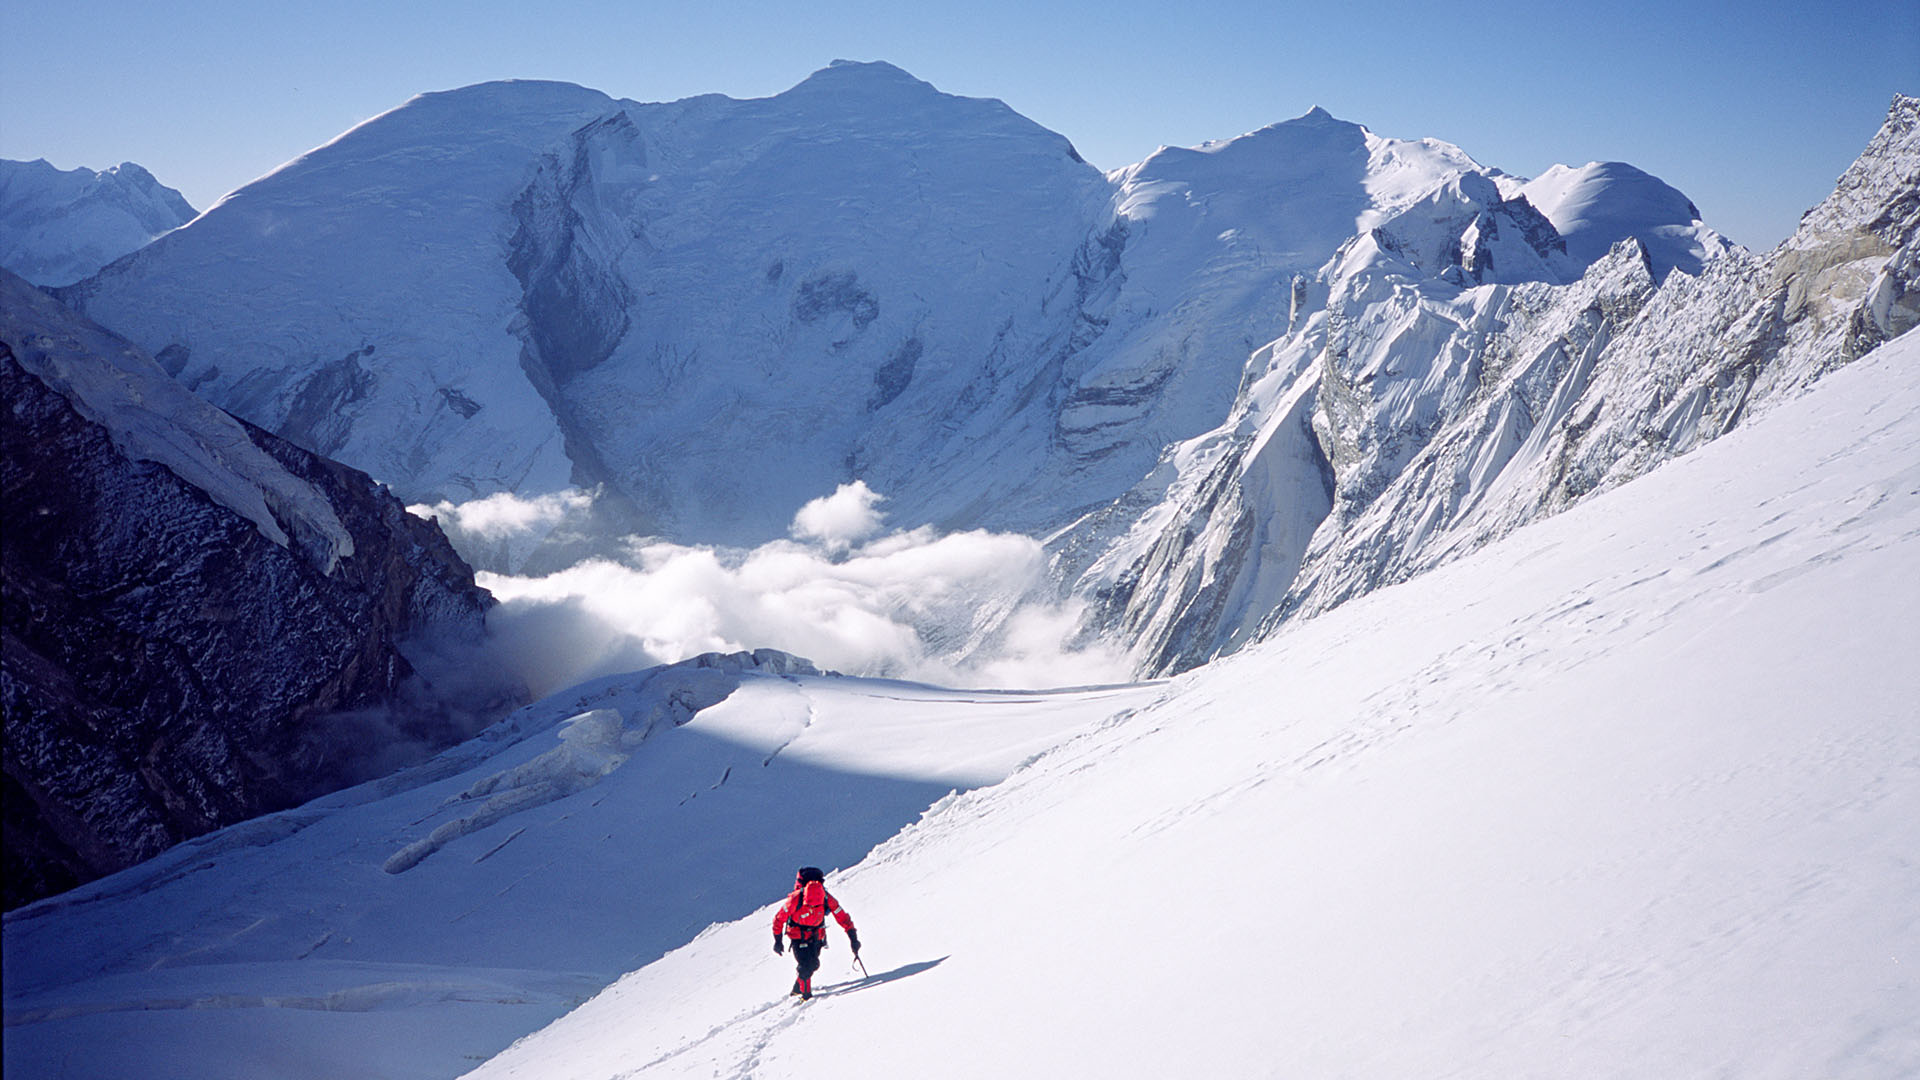 bhrigupanth expeditie - Mike van Berkel onderweg naar de top - bergbeklimmer Melvin Redeker